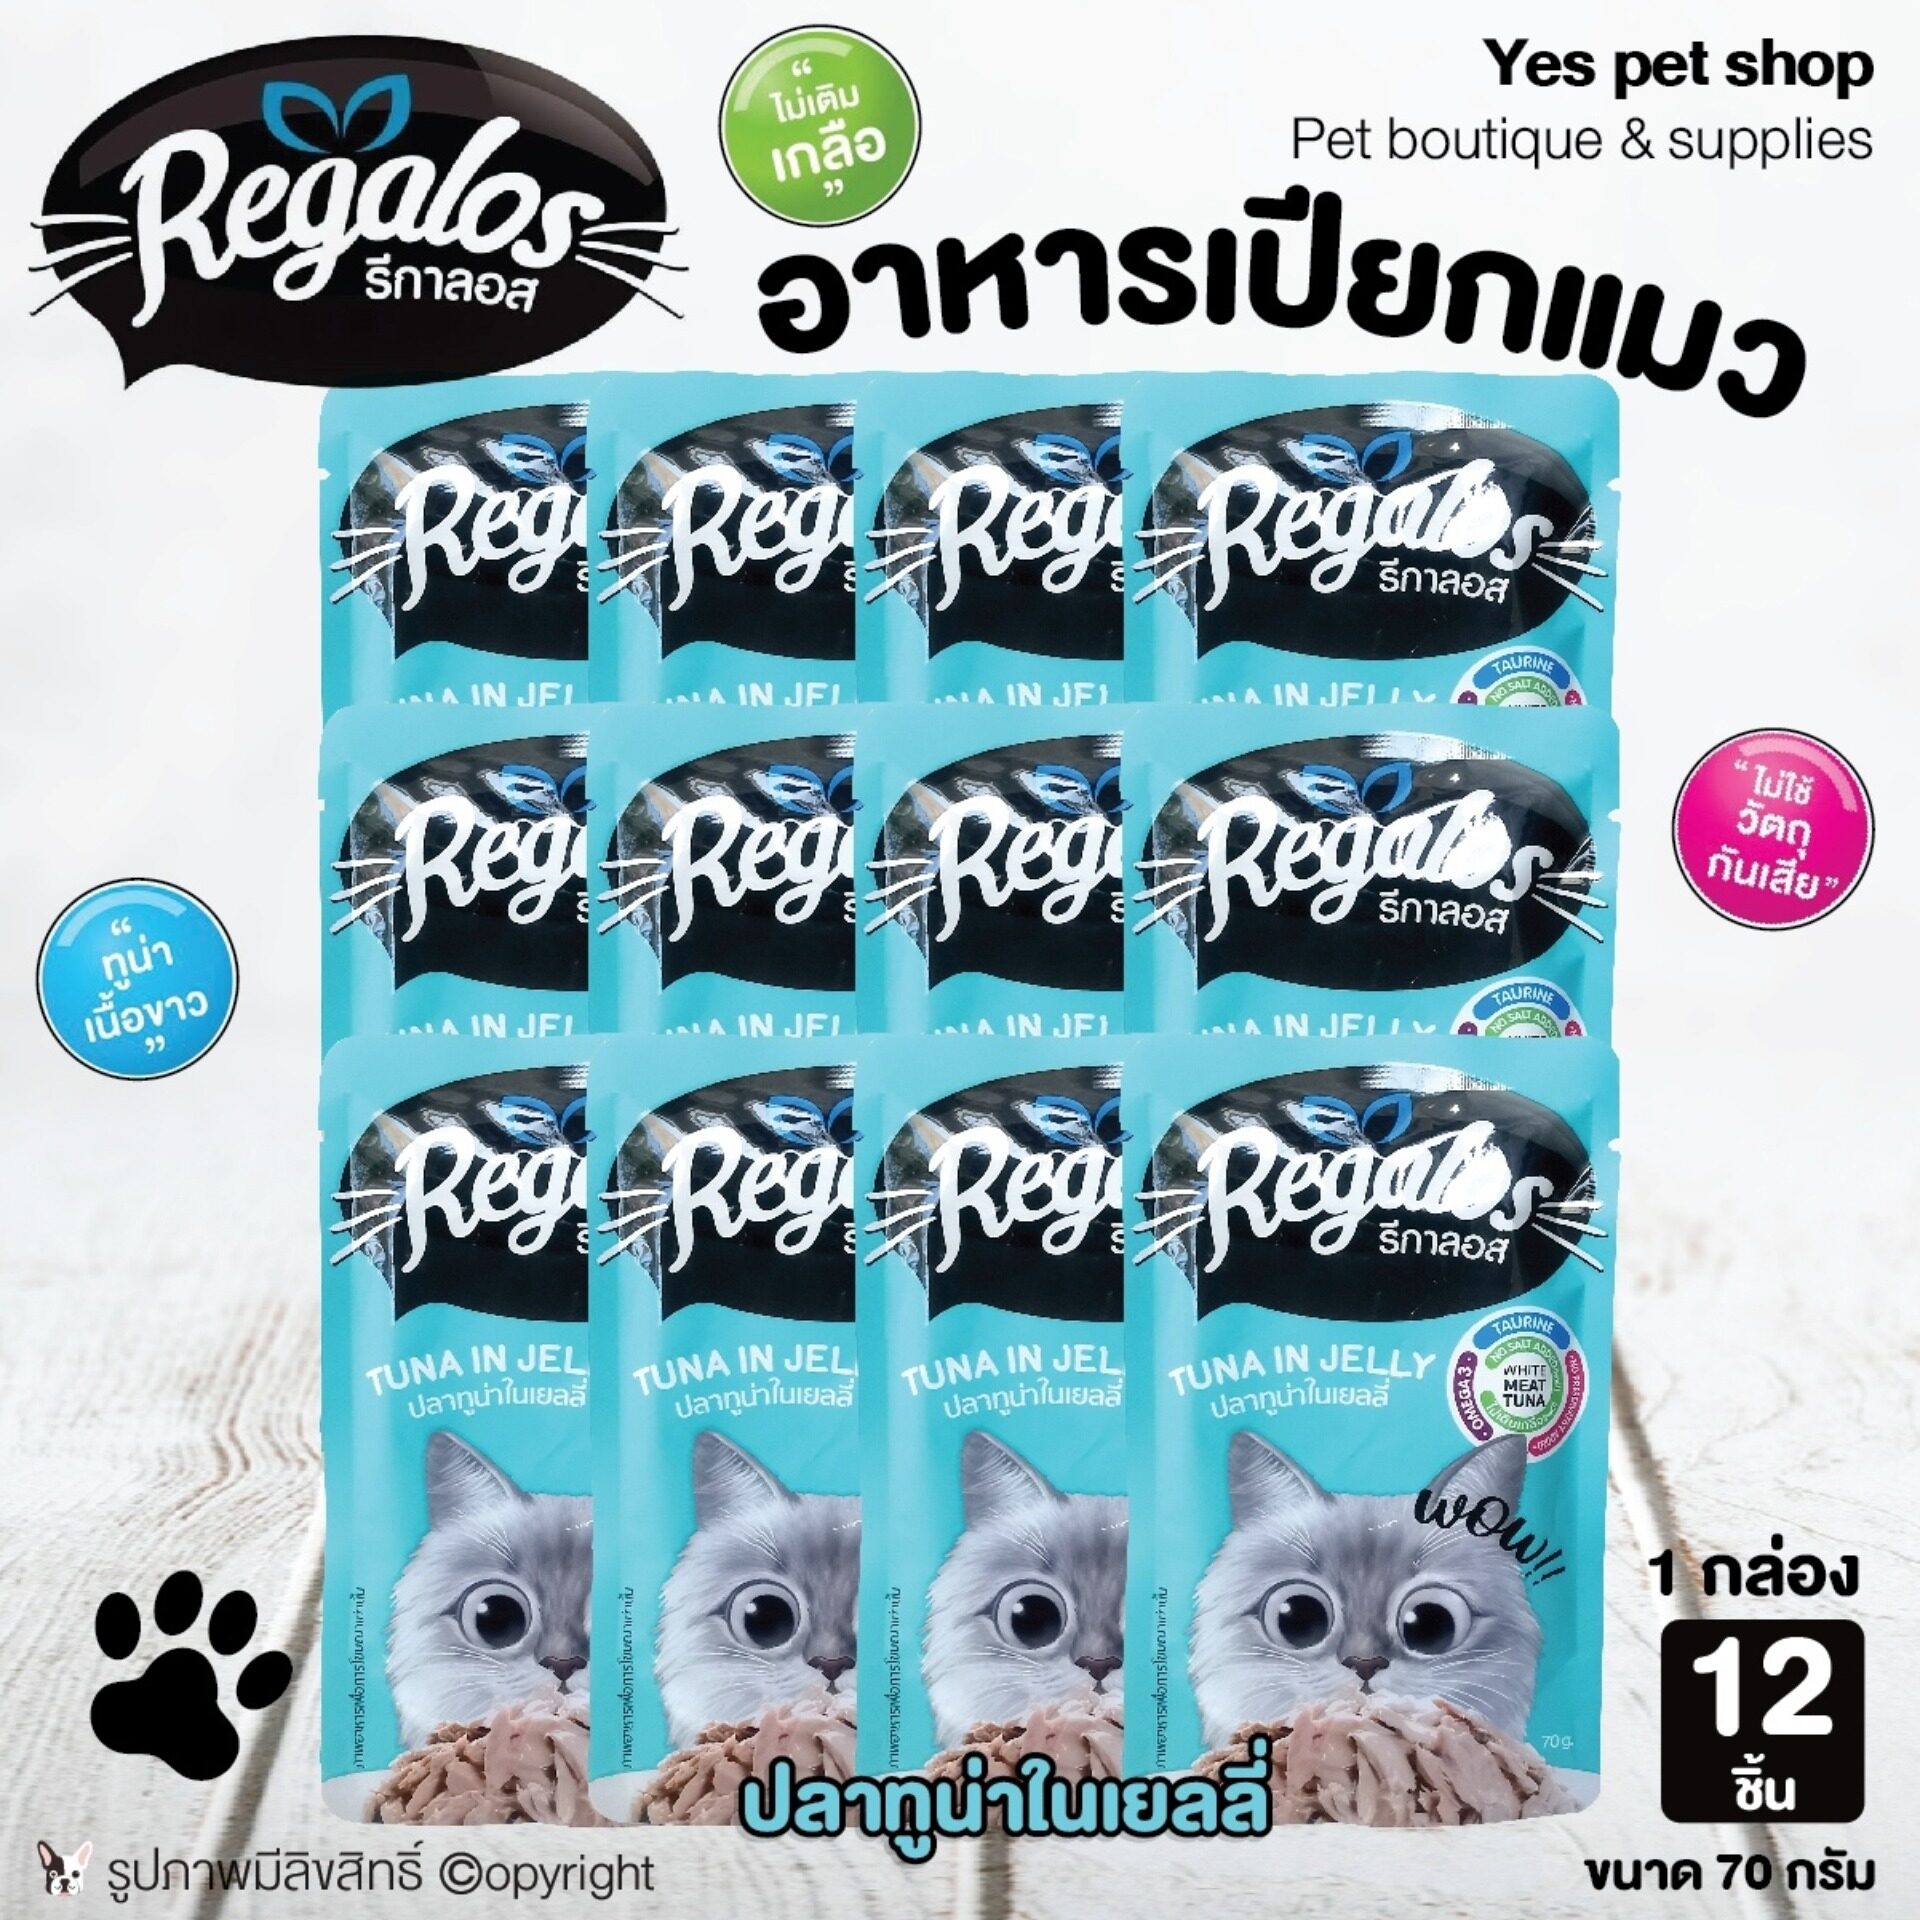 (12ซอง=1กล่อง) Regalos อาหารแมว อาหารเปียกแมว ปลาทู​น่า​ใน​เยลลี่​ ไม่เติมเกลือ ไม่ใช้วัตถุกันเสีย ขนาด 70 กรัม โดย Yes pet shop